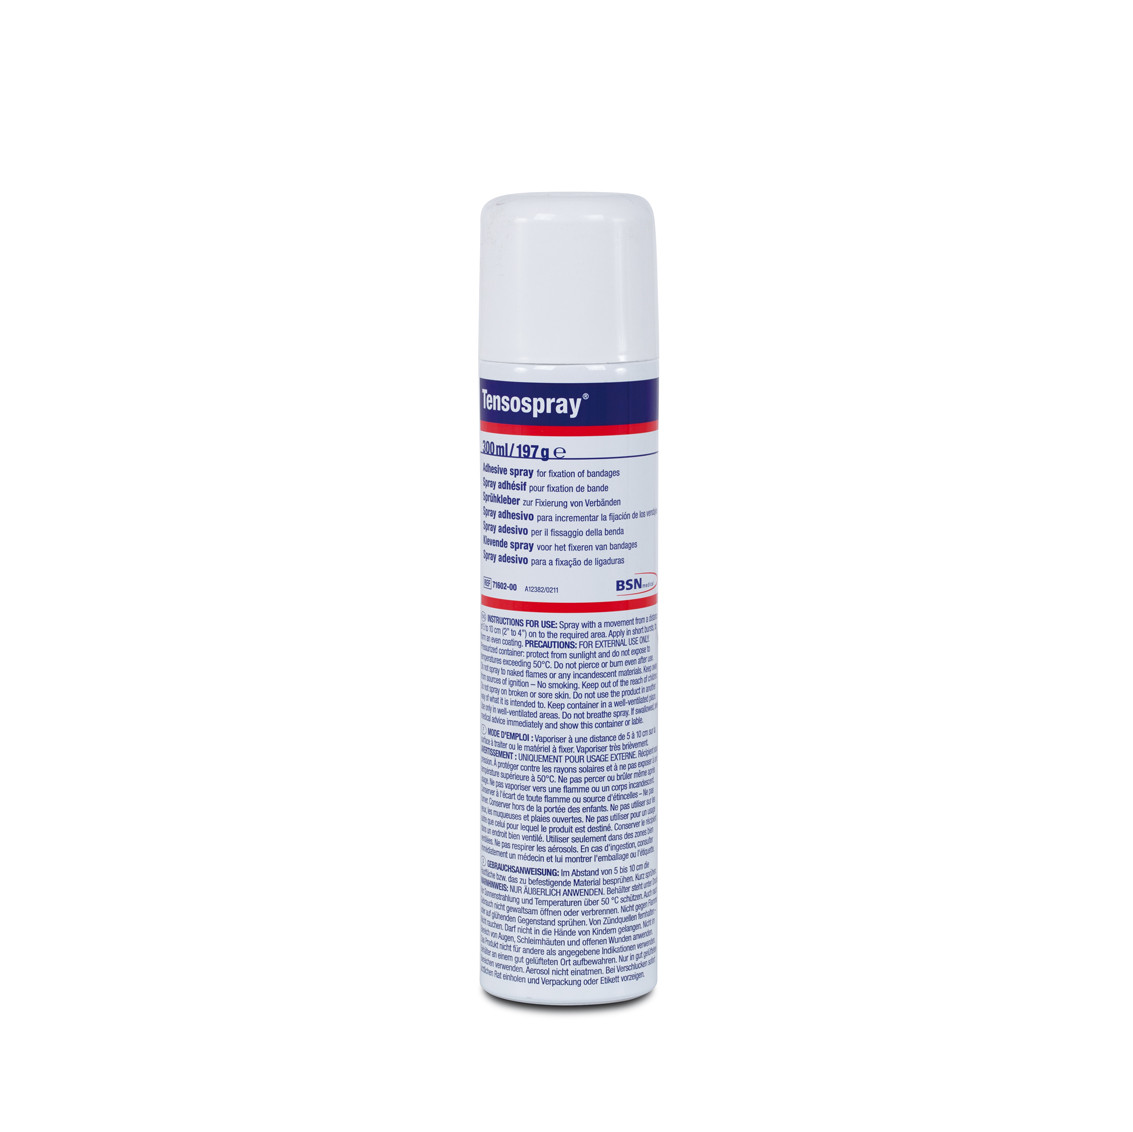 Spray cutaneo adesivo e protettivo Tensospray 300 ml